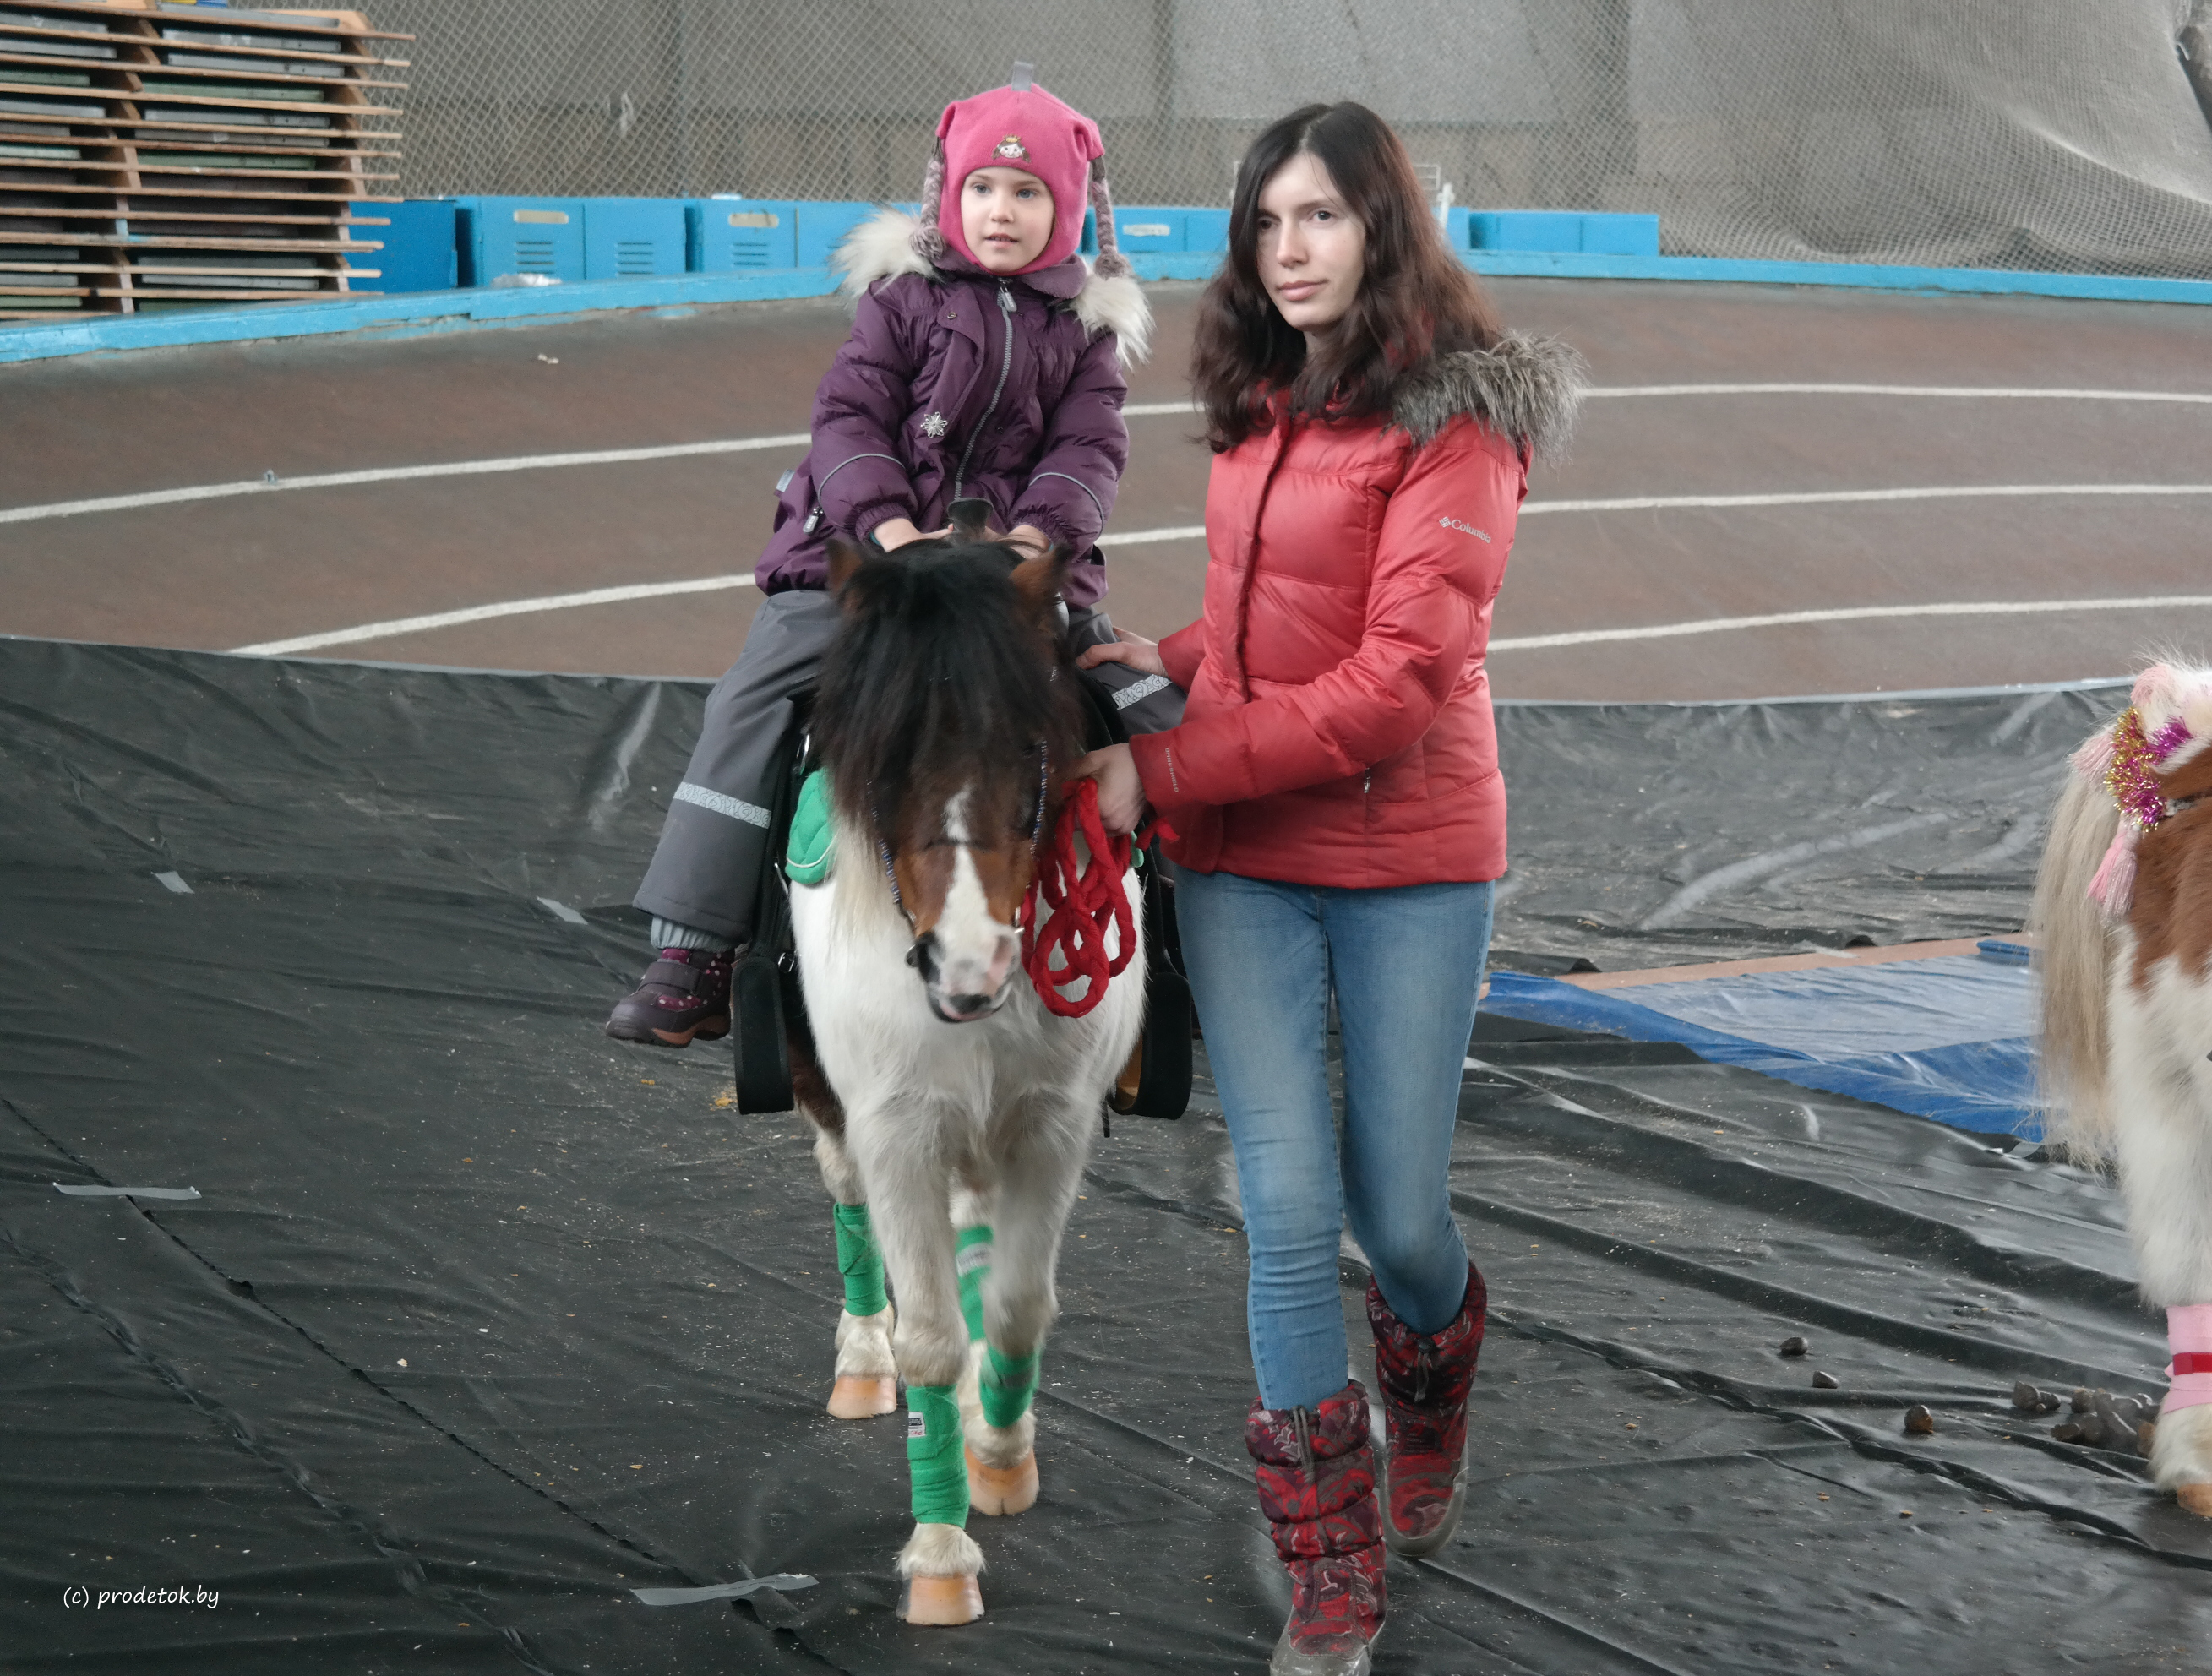 Международная выставка шоу лошадей в Минске (2018 год)